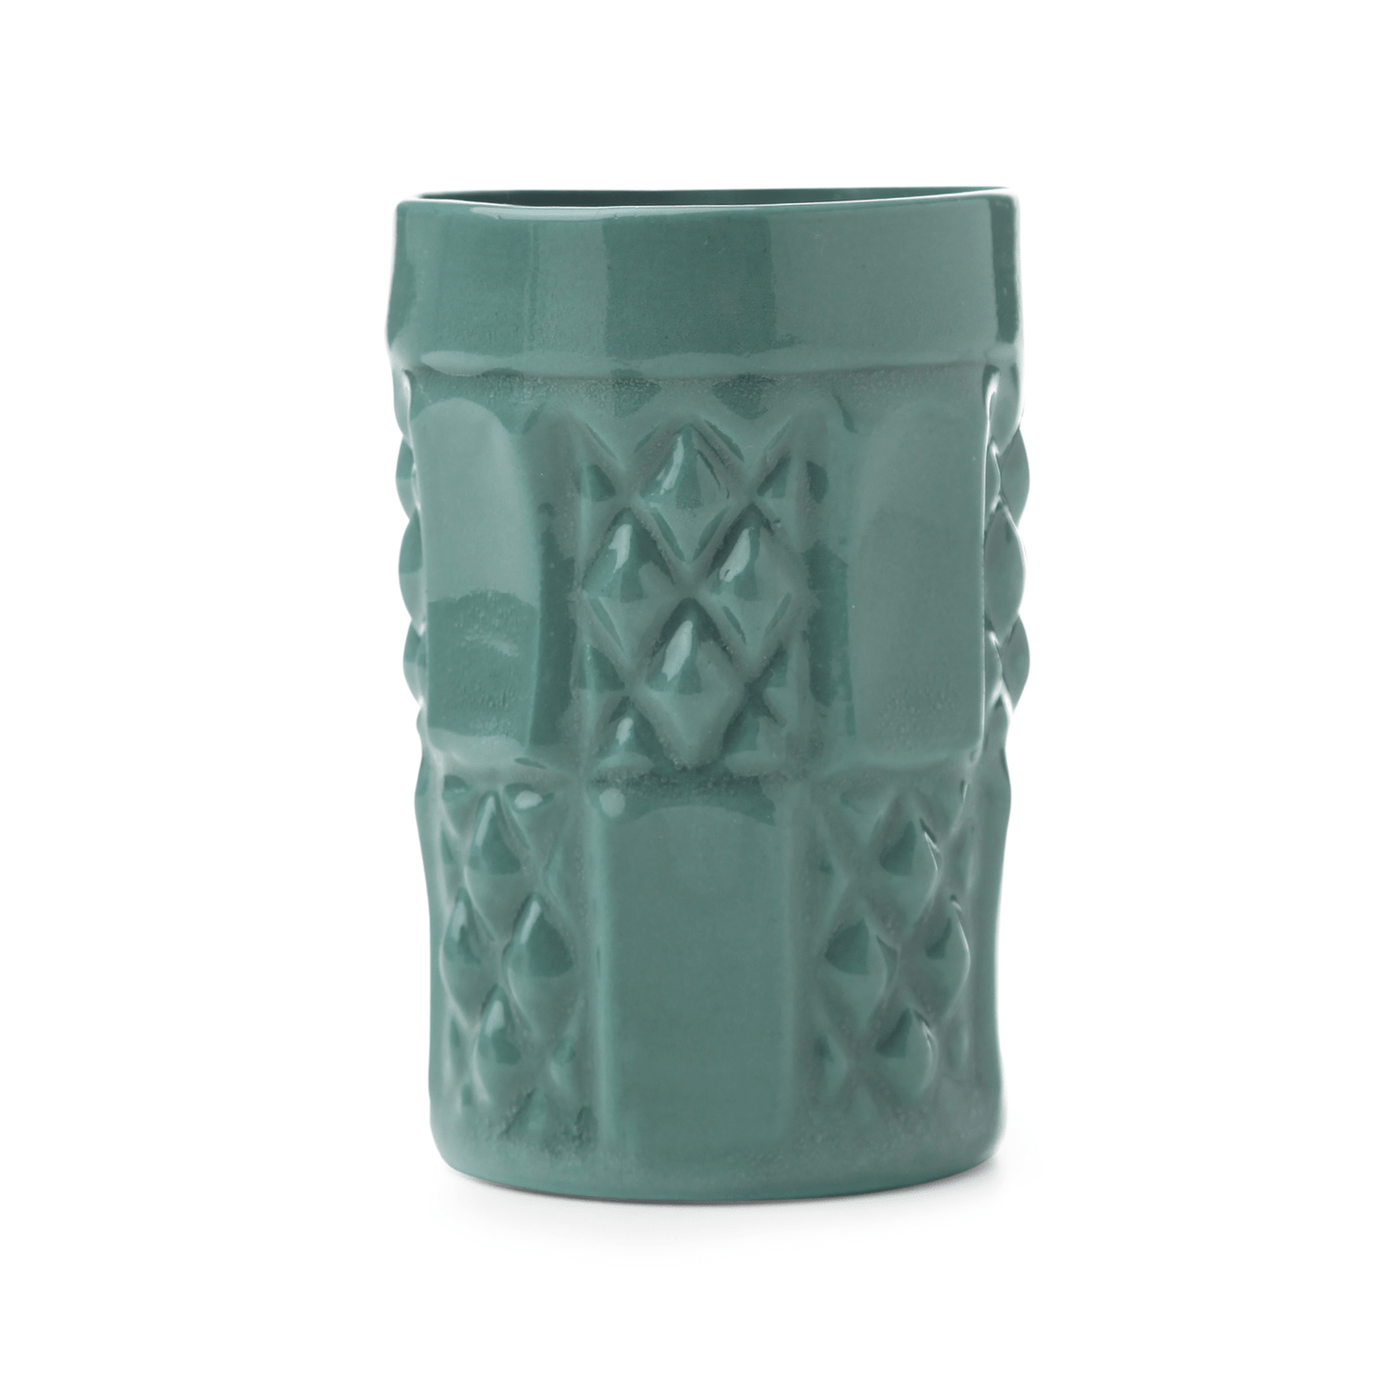 Reva Handmade Mug, Green, 190 ml Cups & Mugs sazy.com